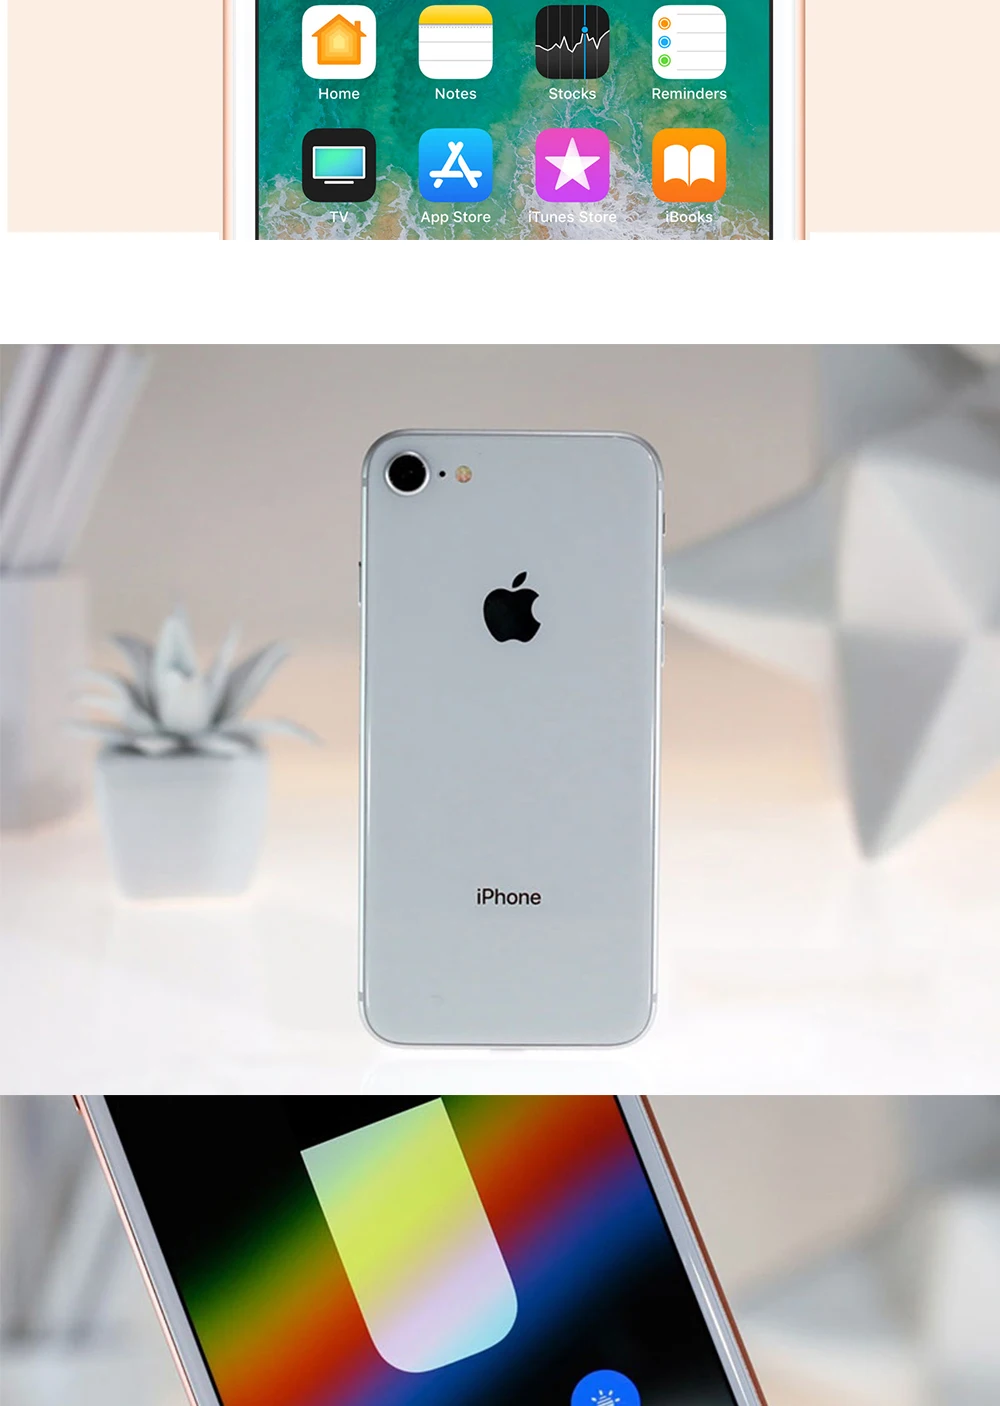 Apple iPhone 8 4,7 "4G LTE 2 Гб ОЗУ 64 Гб/256 Гб ПЗУ Беспроводная зарядка Hexa Core 12MP Touch ID IOS 11 Оригинальный разблокированный мобильный телефон